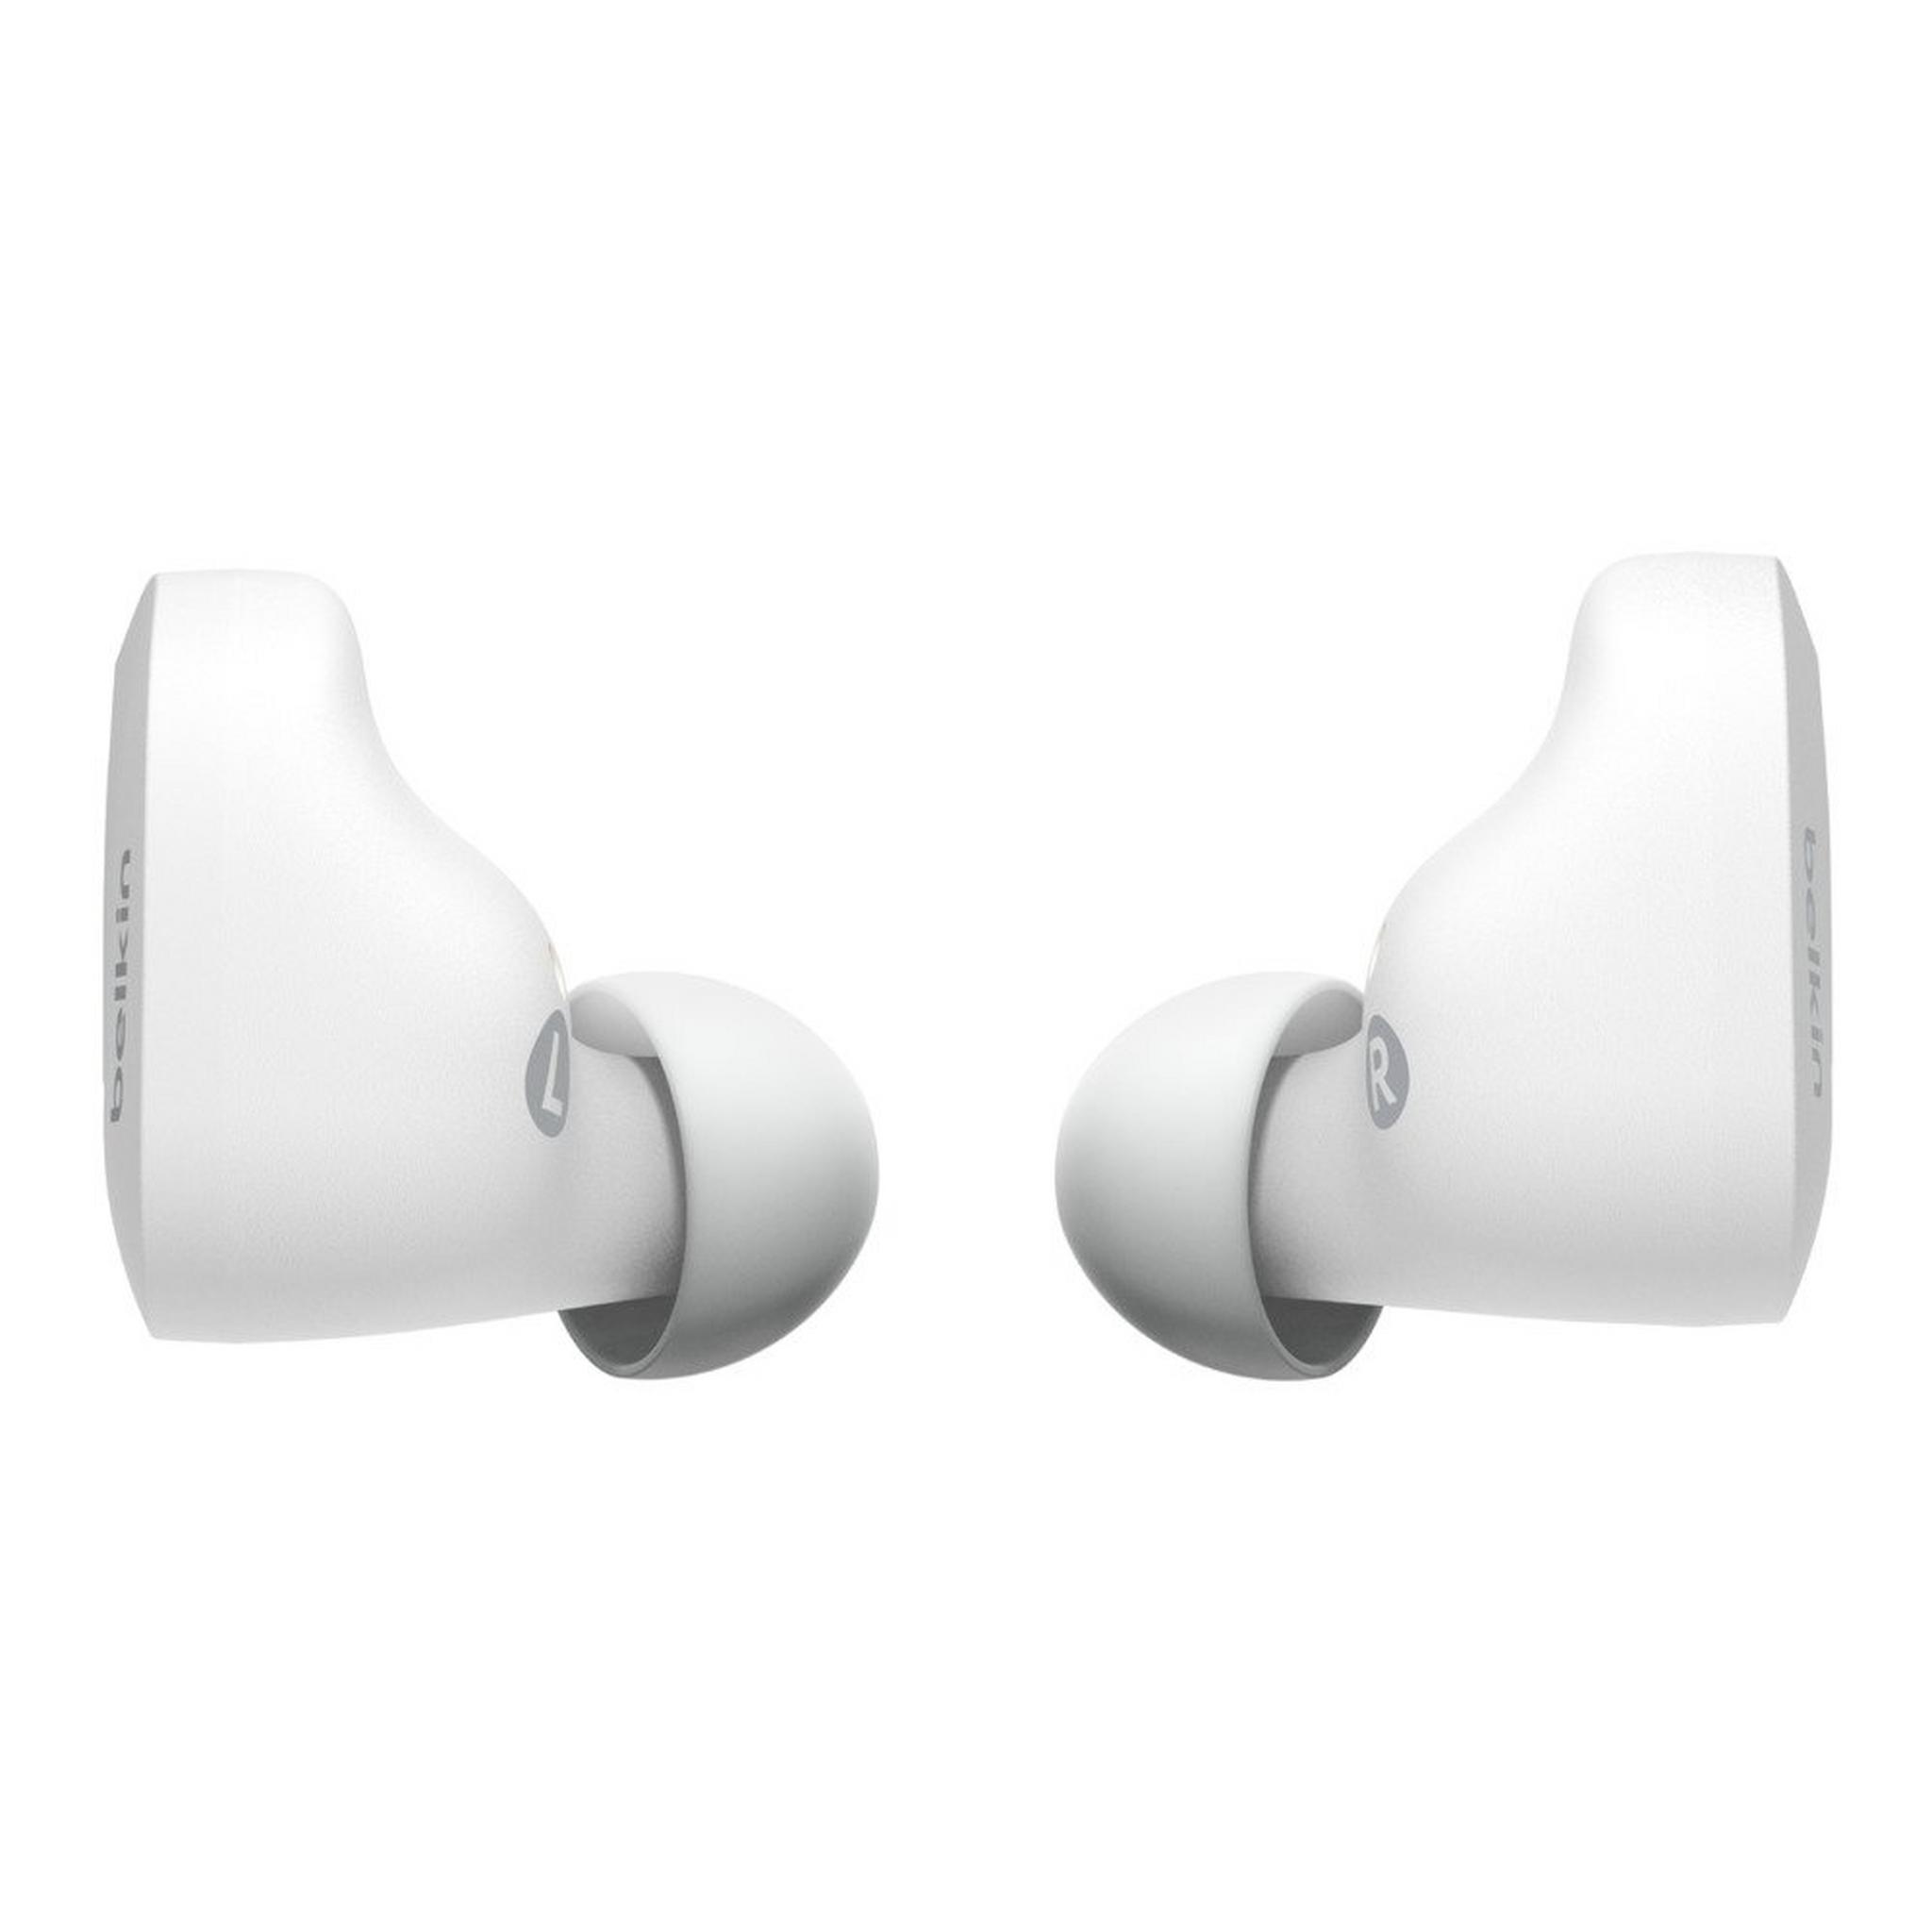 Belkin Soundform True Wireless Earbuds - white